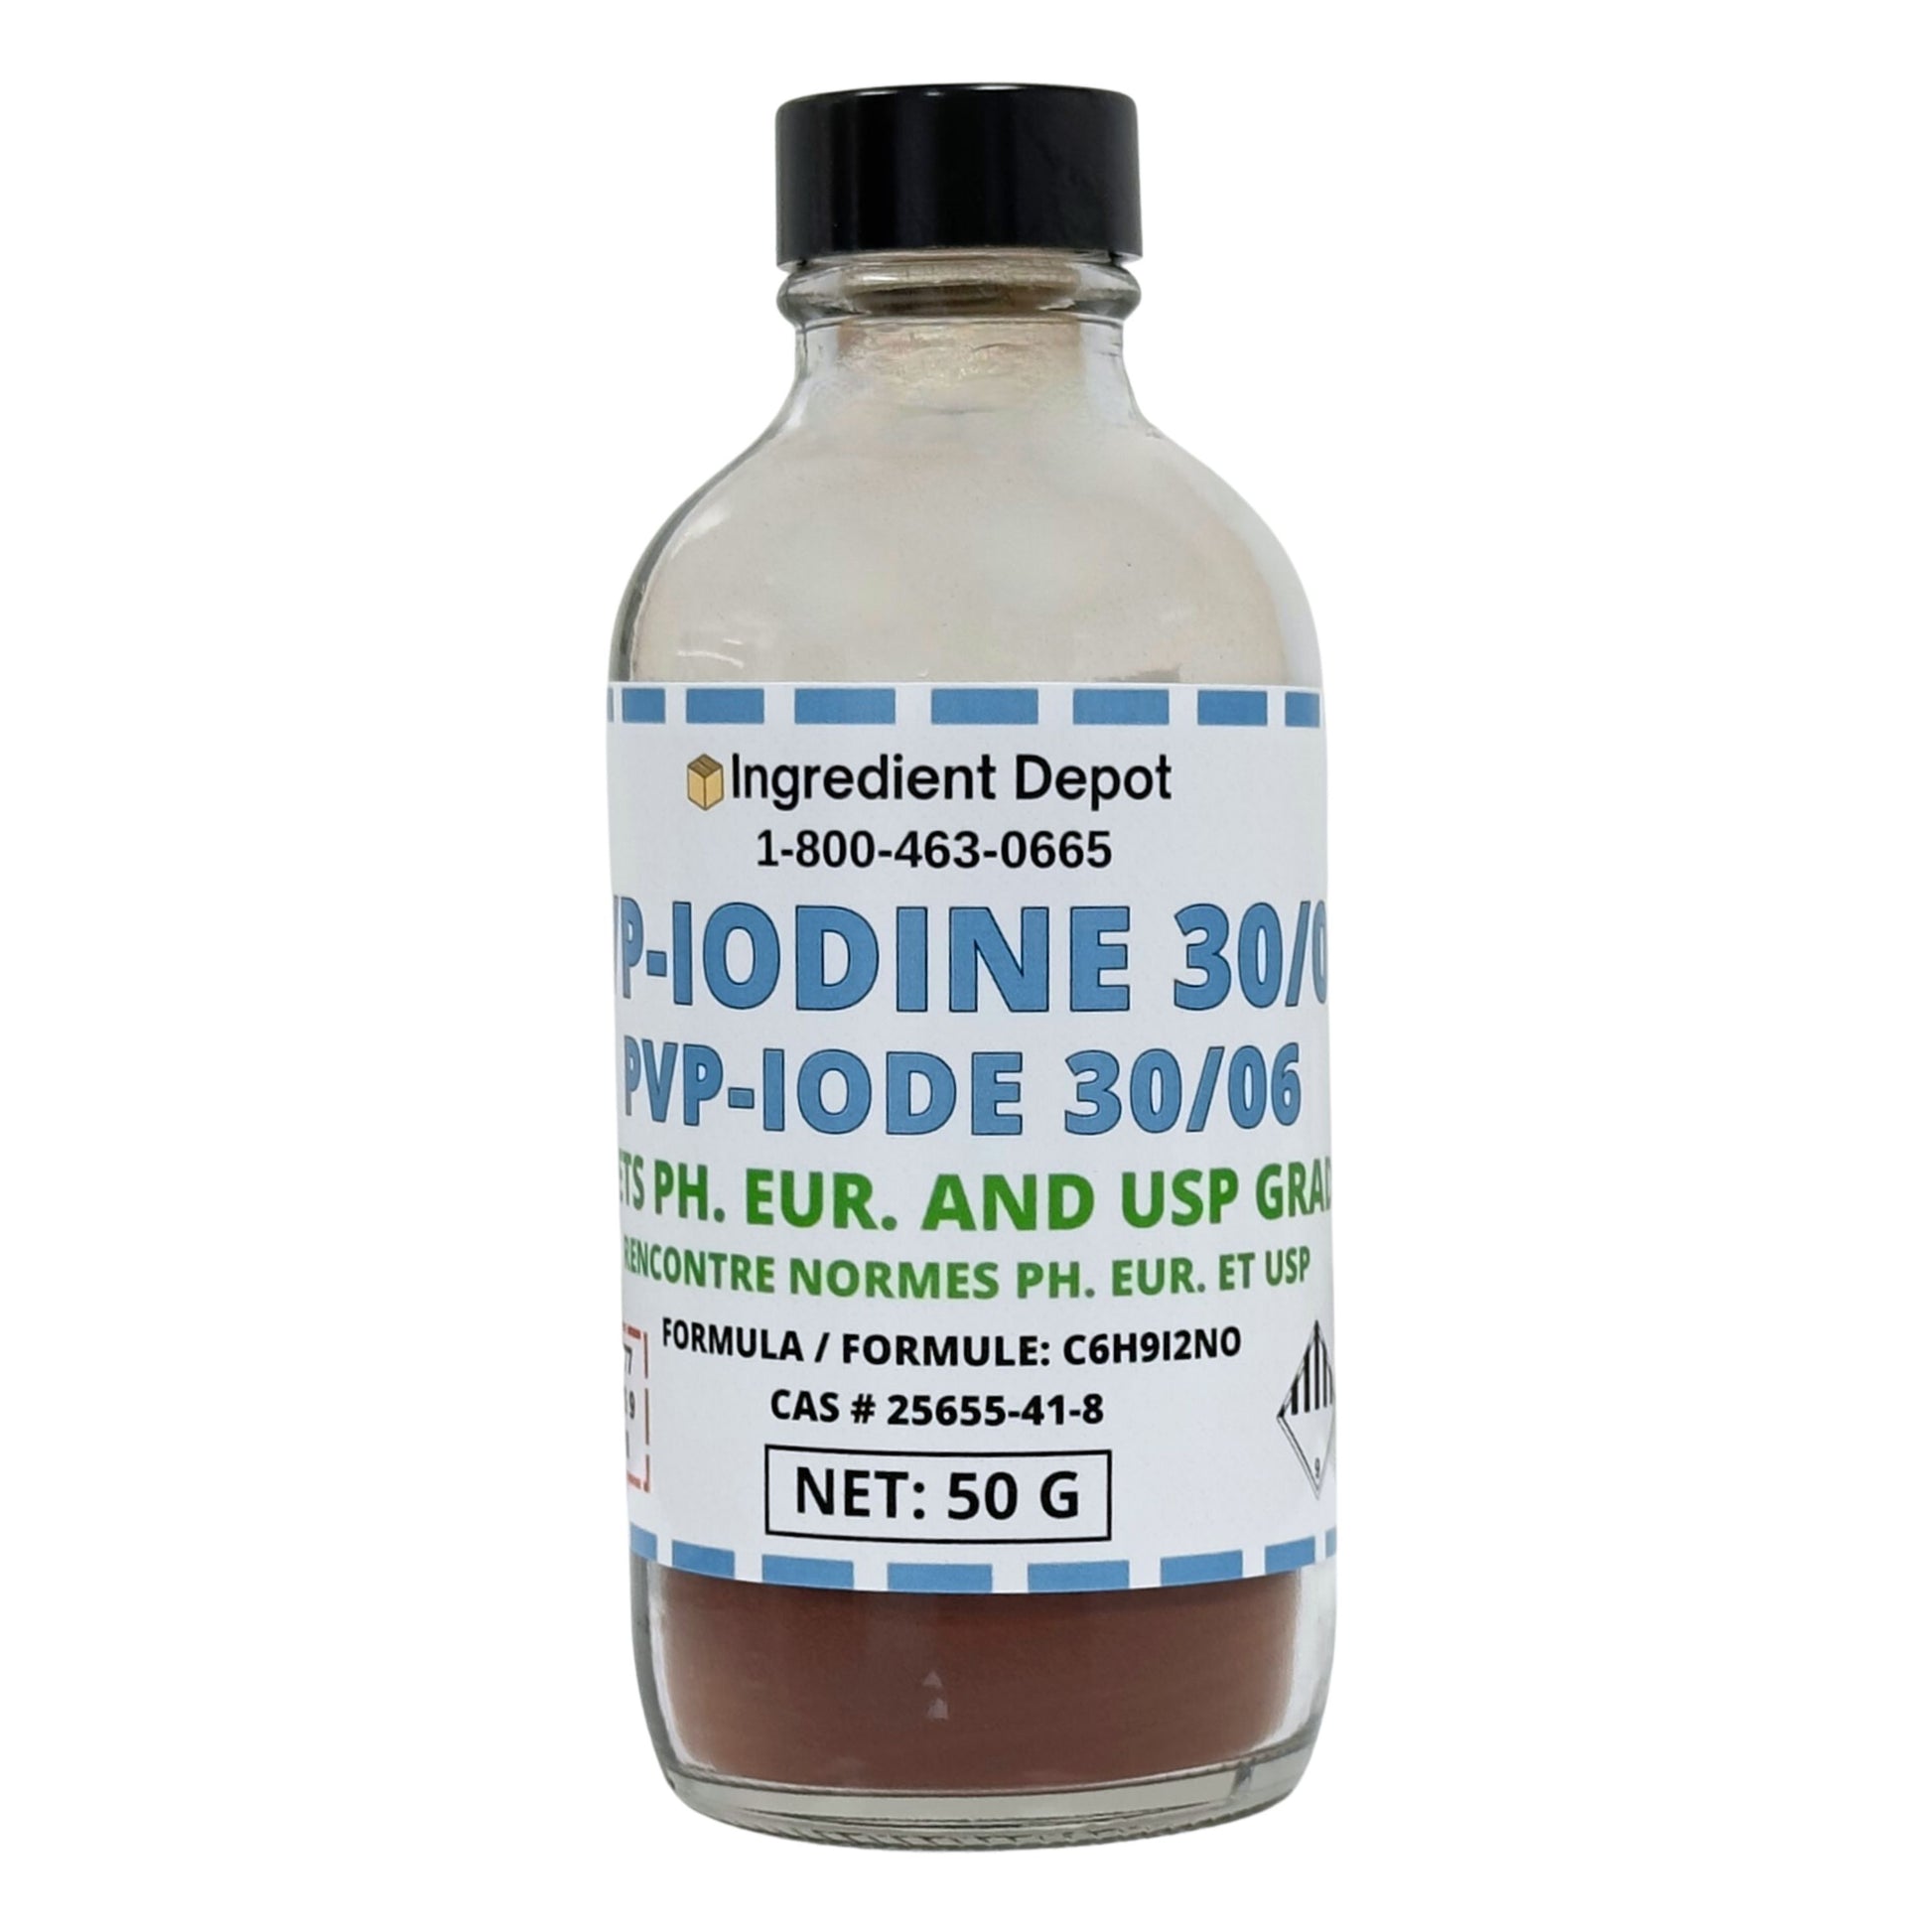 PVP-Iodine 30/06 (PVP-I, Povidone-Iodine) 50g - IngredientDepot.com